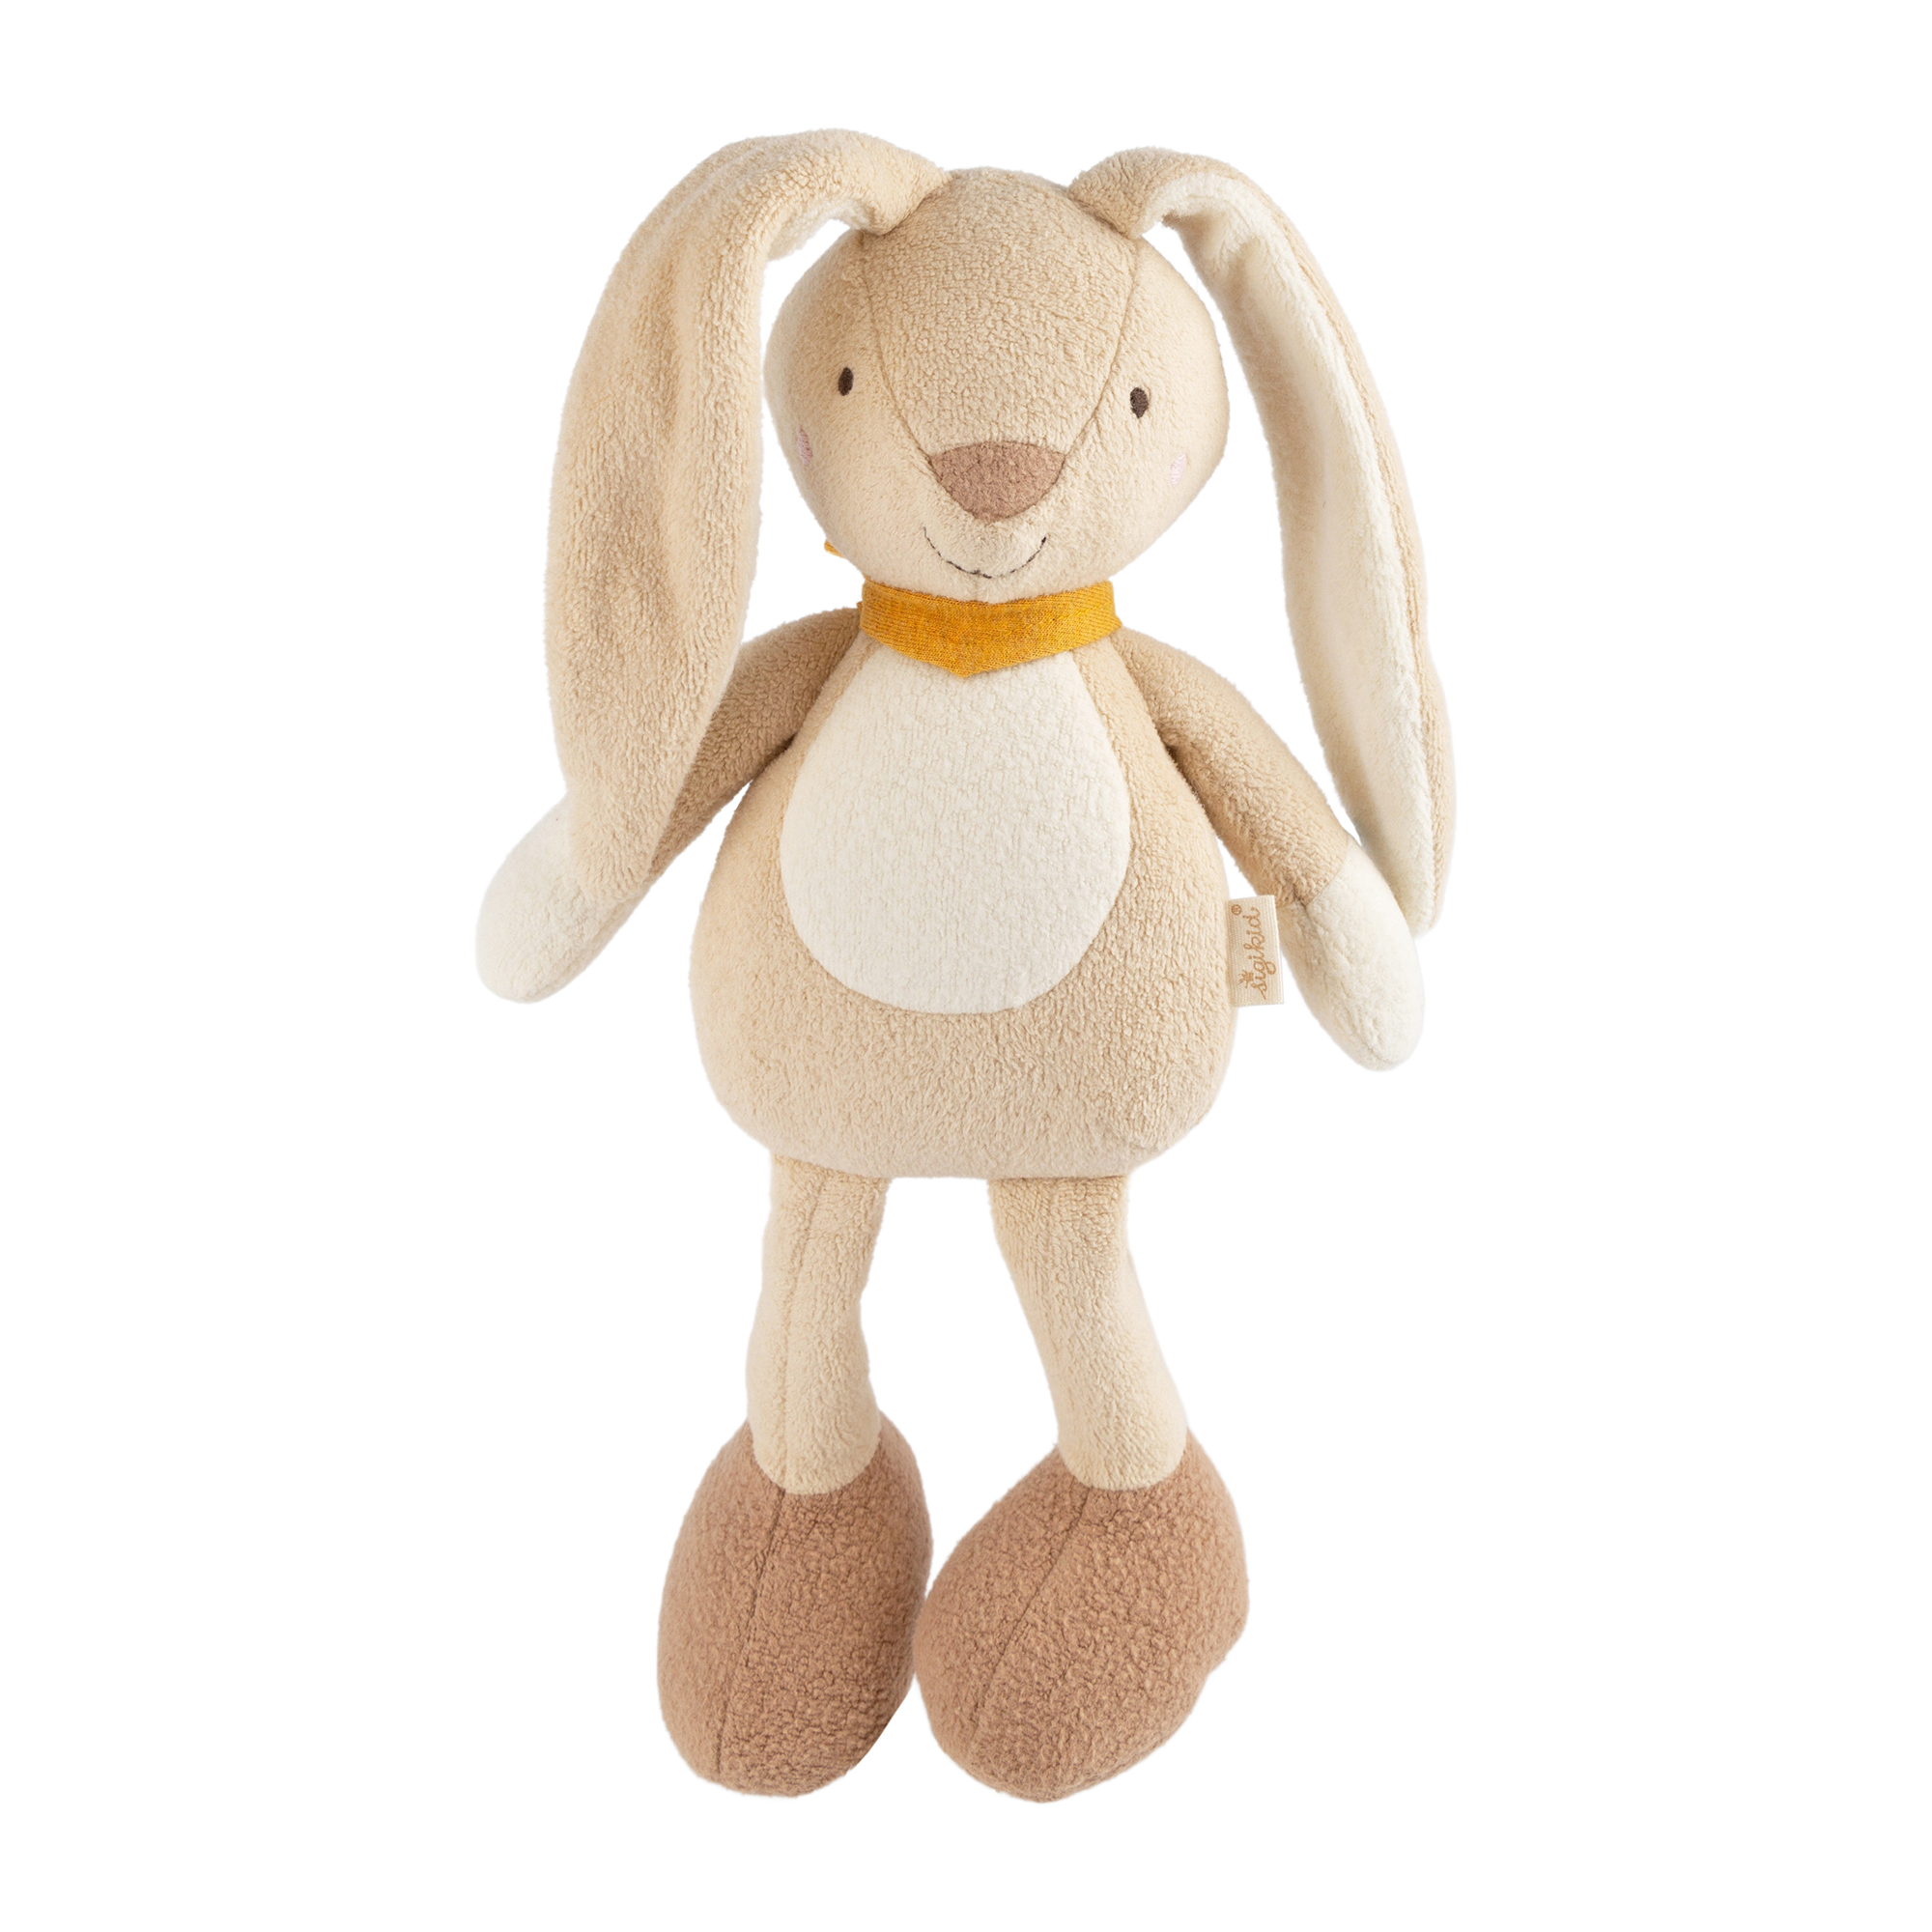 Soft toy rabbit